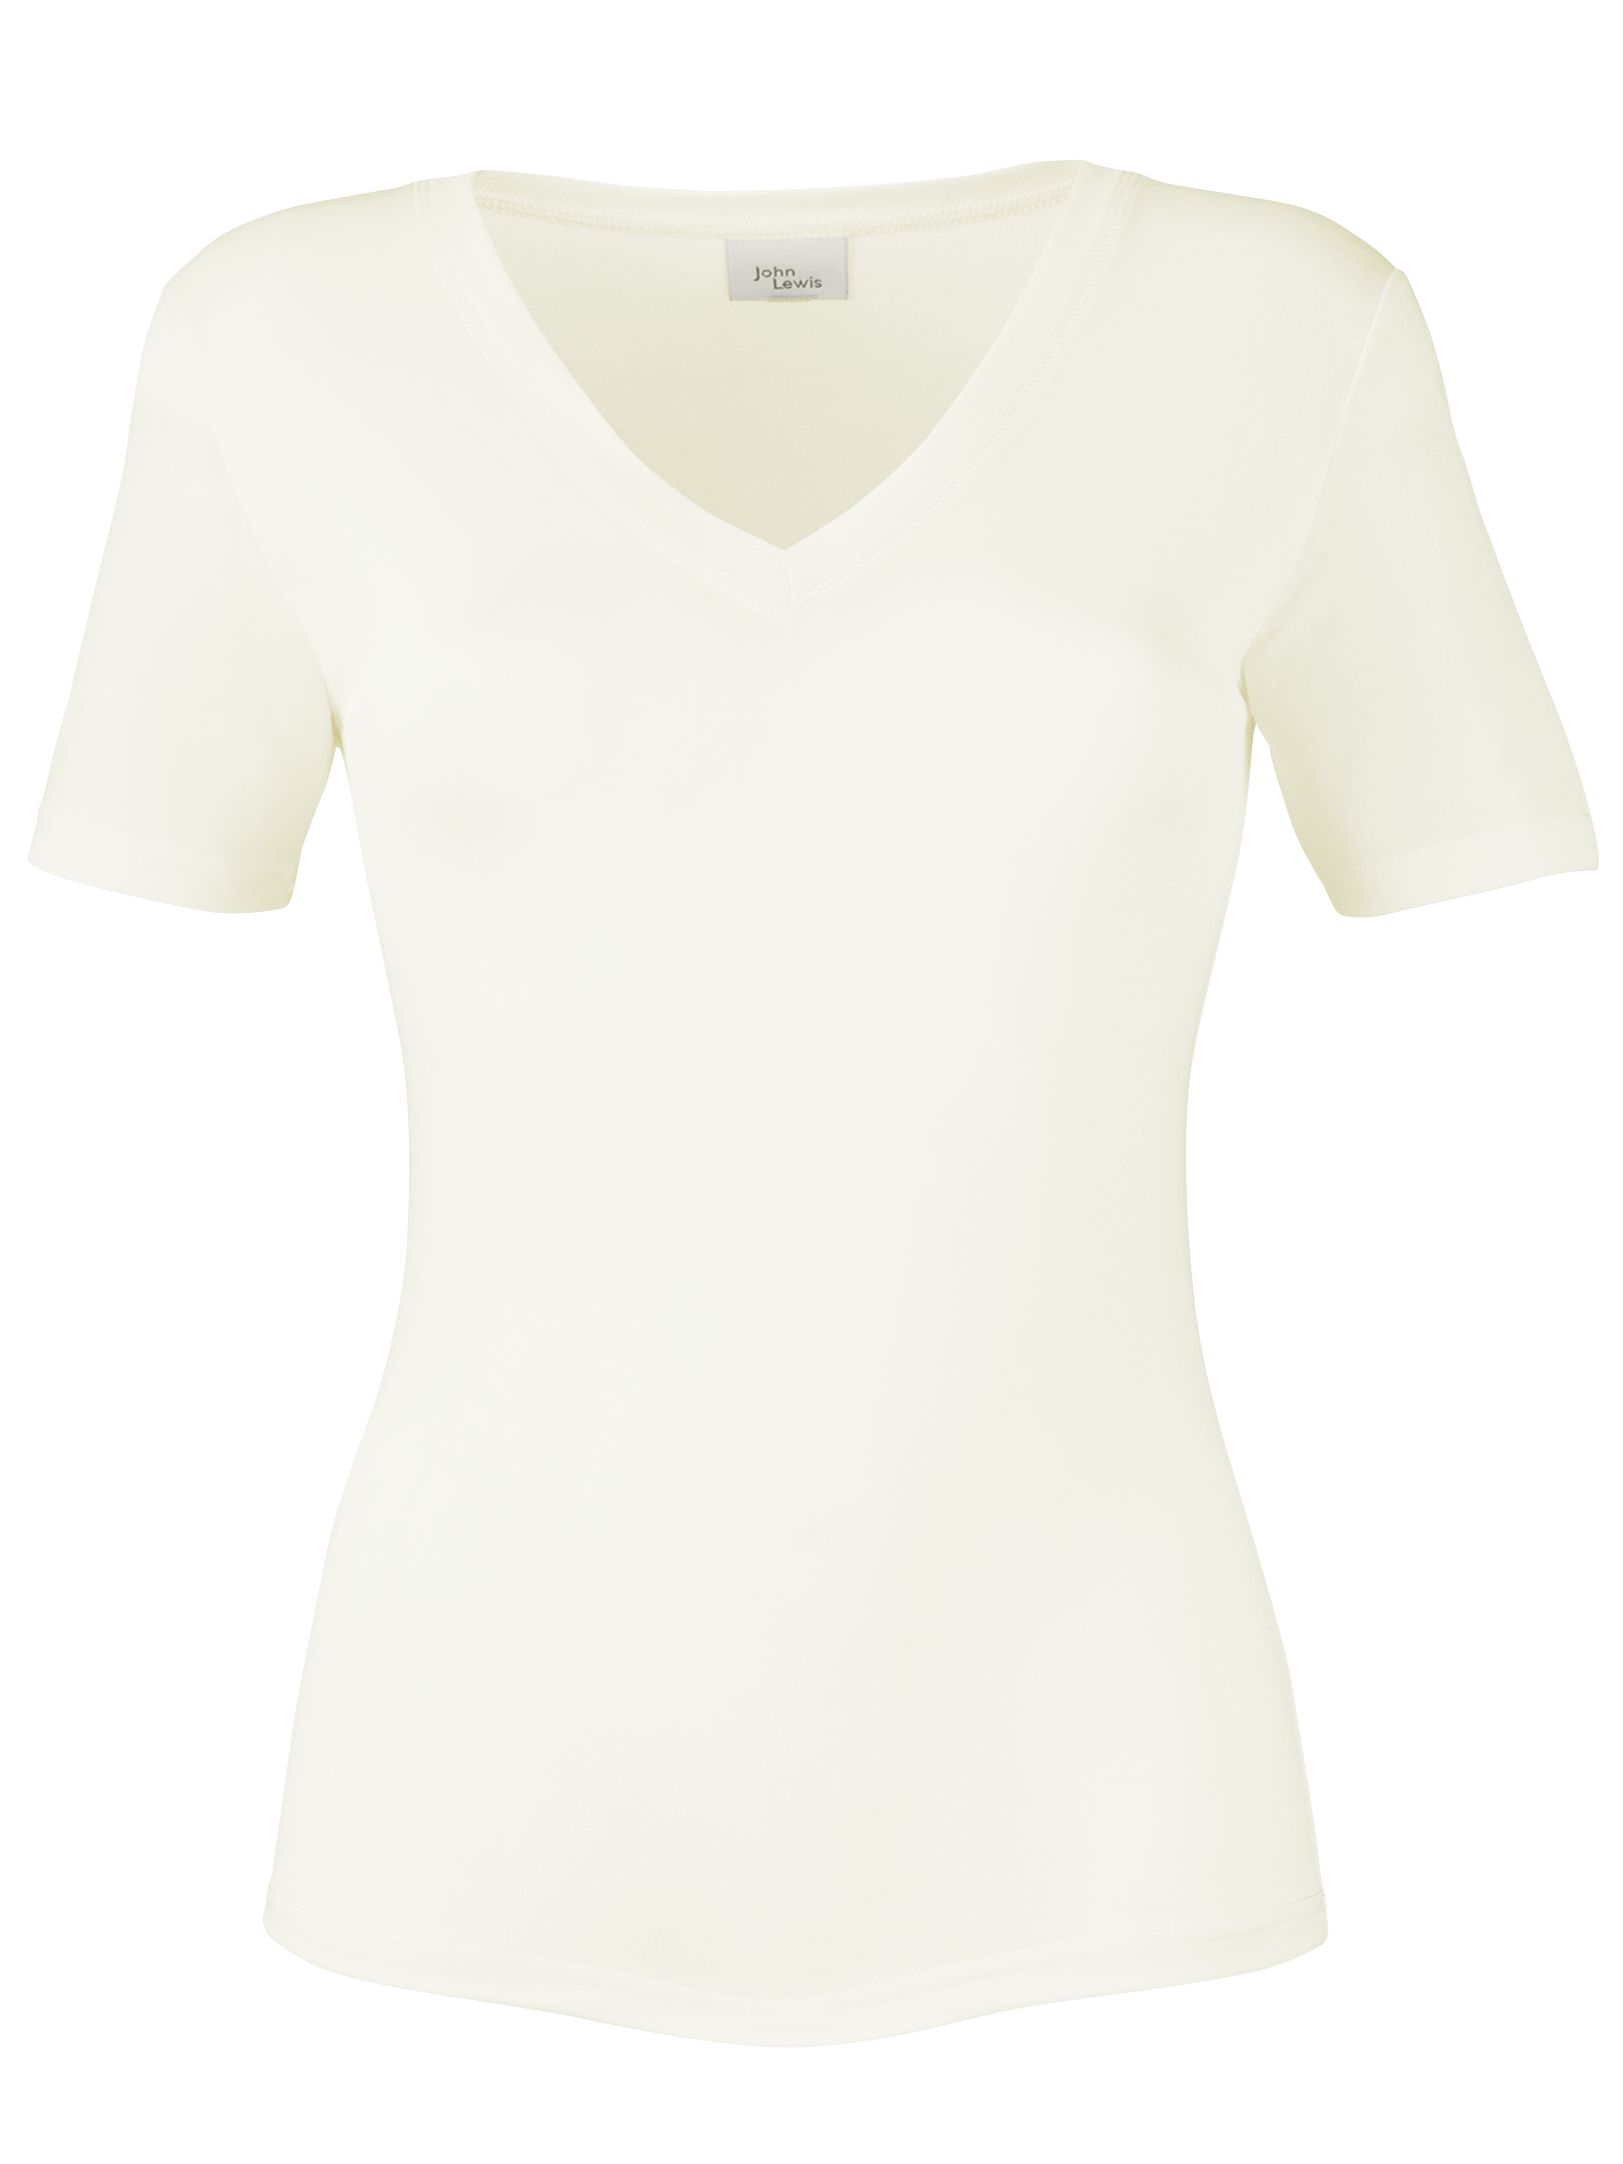 John Lewis Silk Thermal T-Shirt, Ivory, M/L